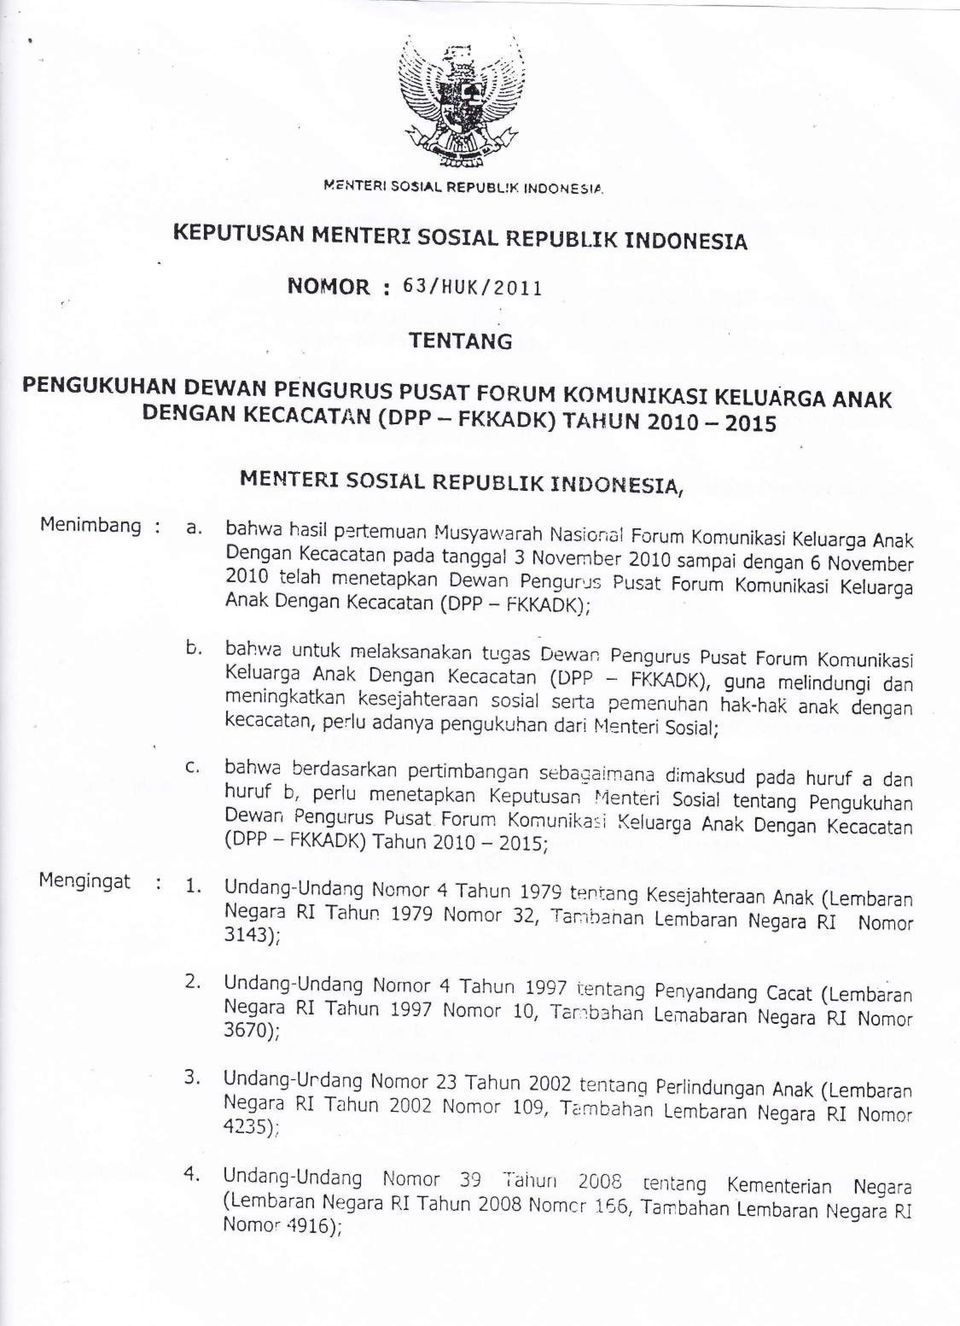 SOSIAL REPUBLIK INDOftESIA, Menimbang : a. b. c. Mengingat : 1. bahwa hasil pertemuan Musyawarah Nasional Forum Komunikasi Keluarga Anak?^"lgun.